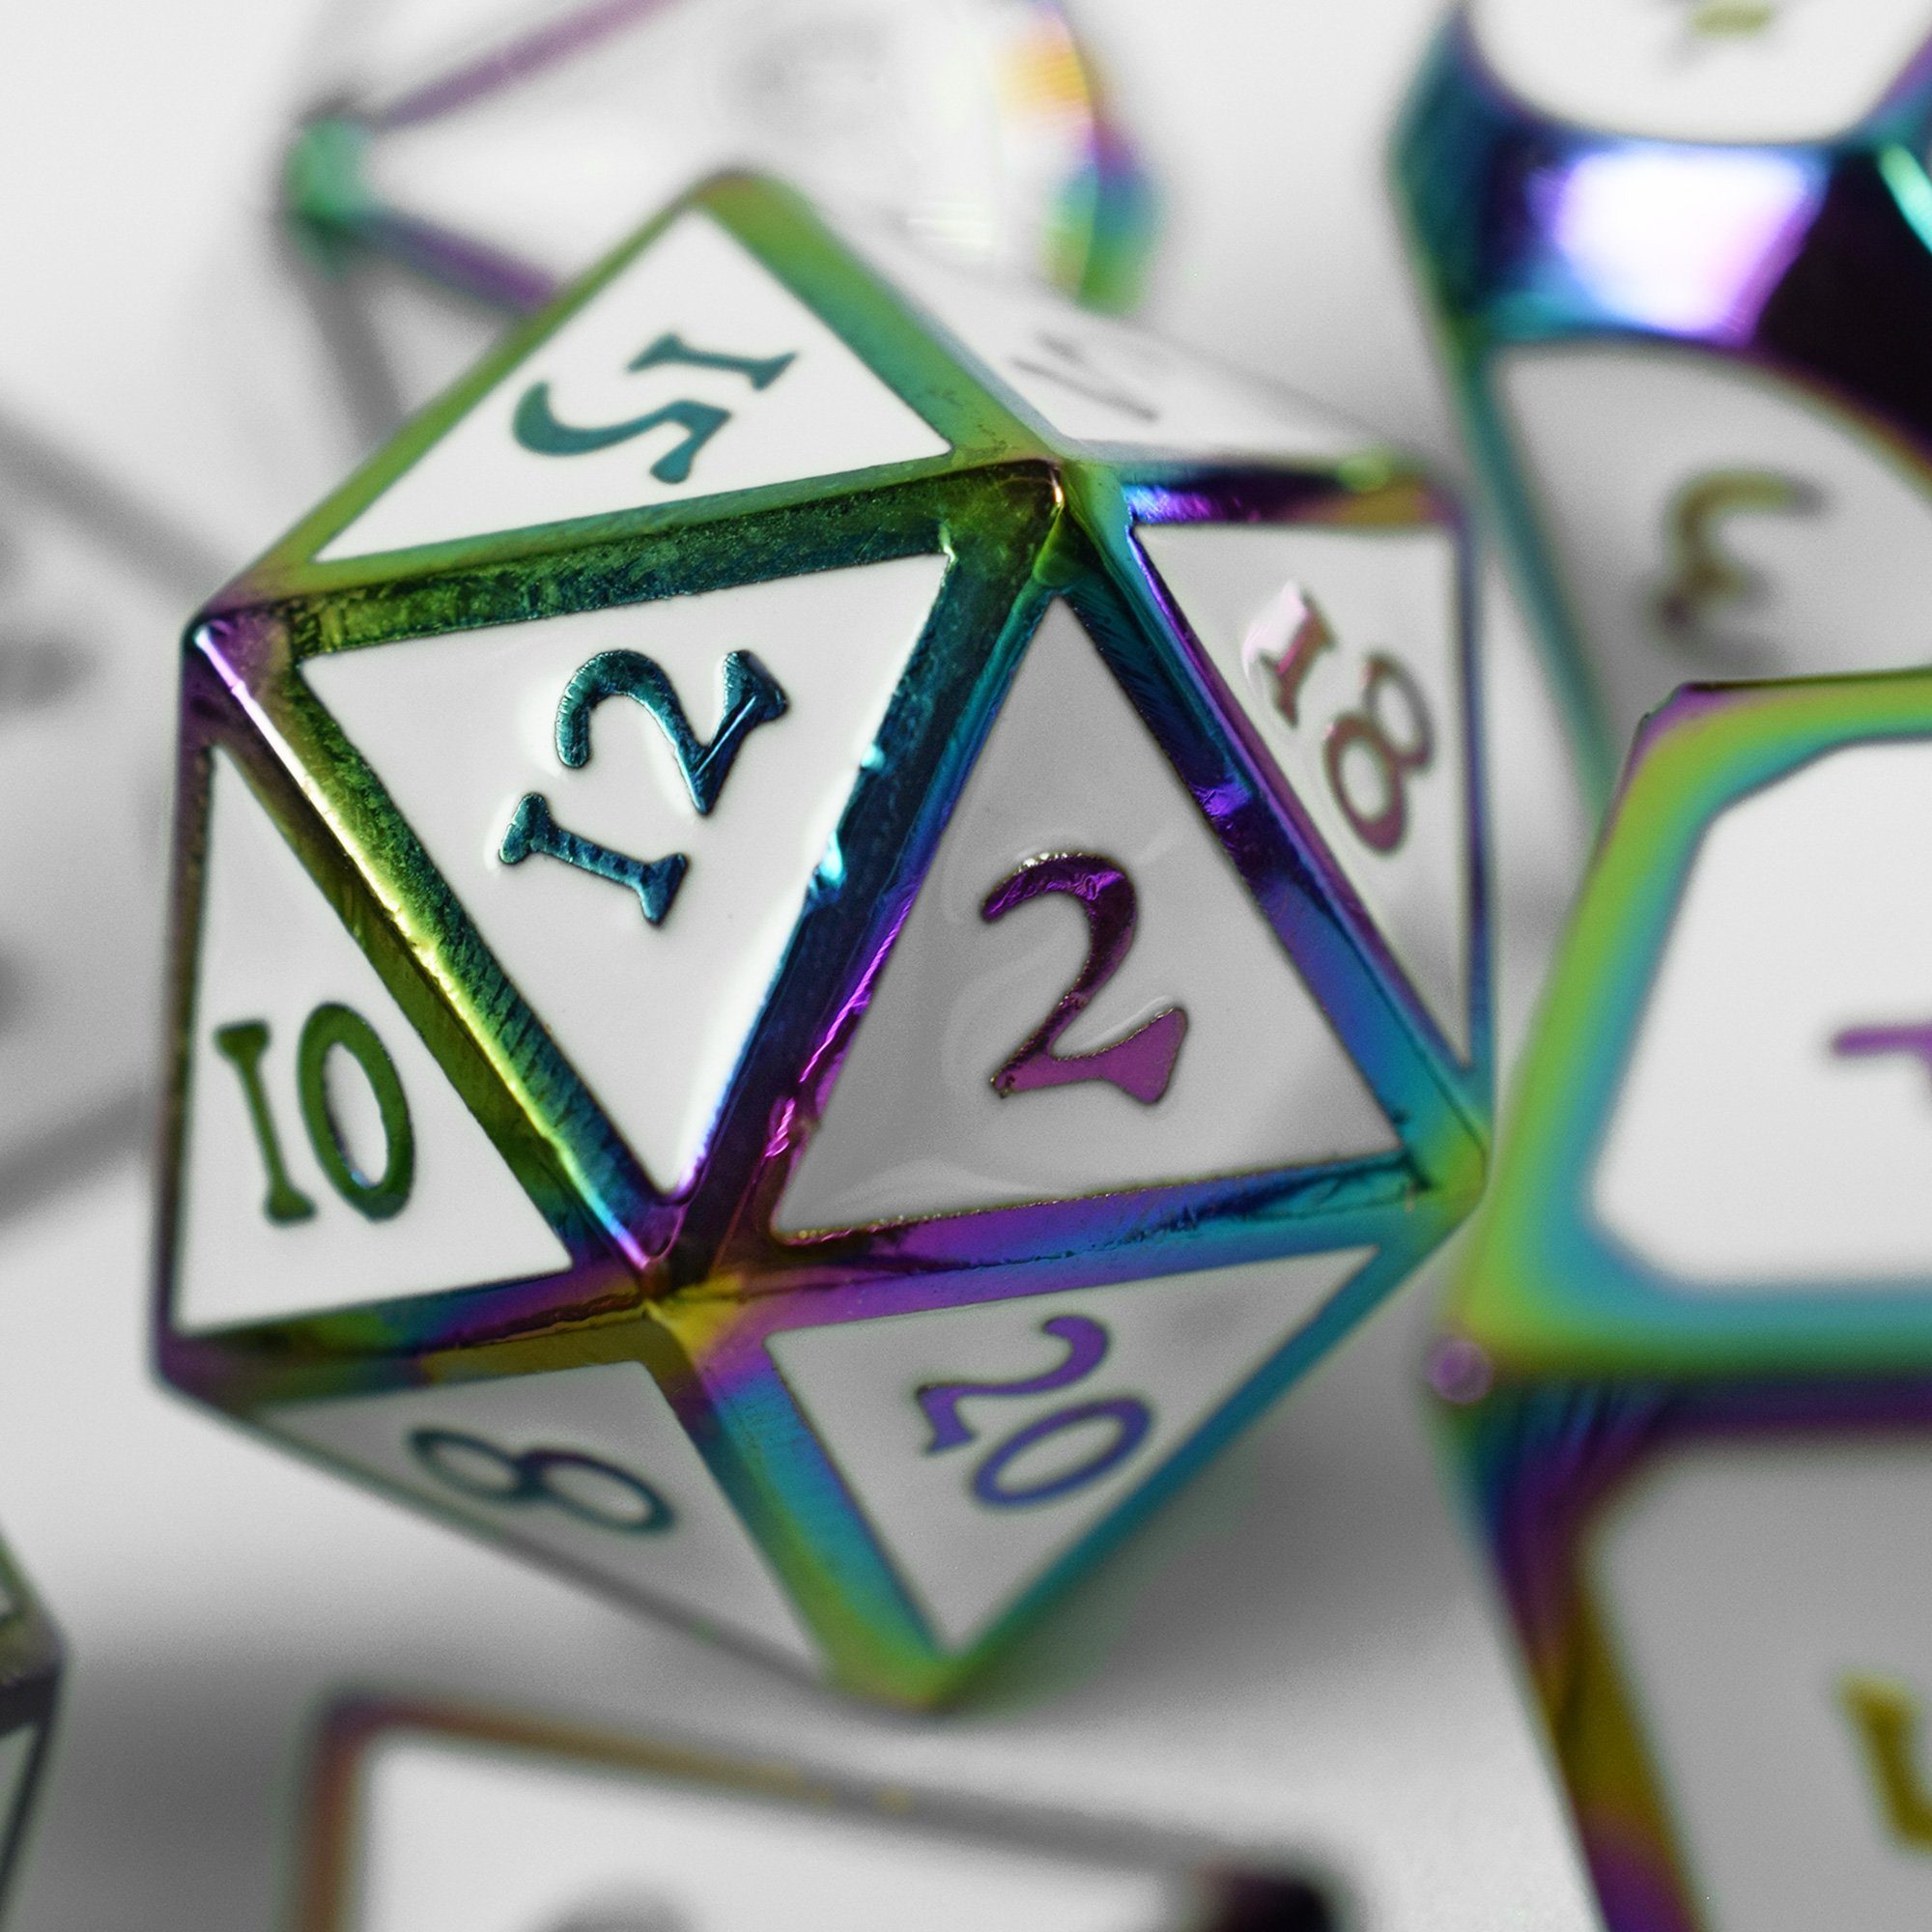 SHIBBY Spielesammlung, 7 polyedrische Metall-DND-Würfel Steampunk Aufbewahrungsbox in Optik, inkl. Rainbow/Weiß